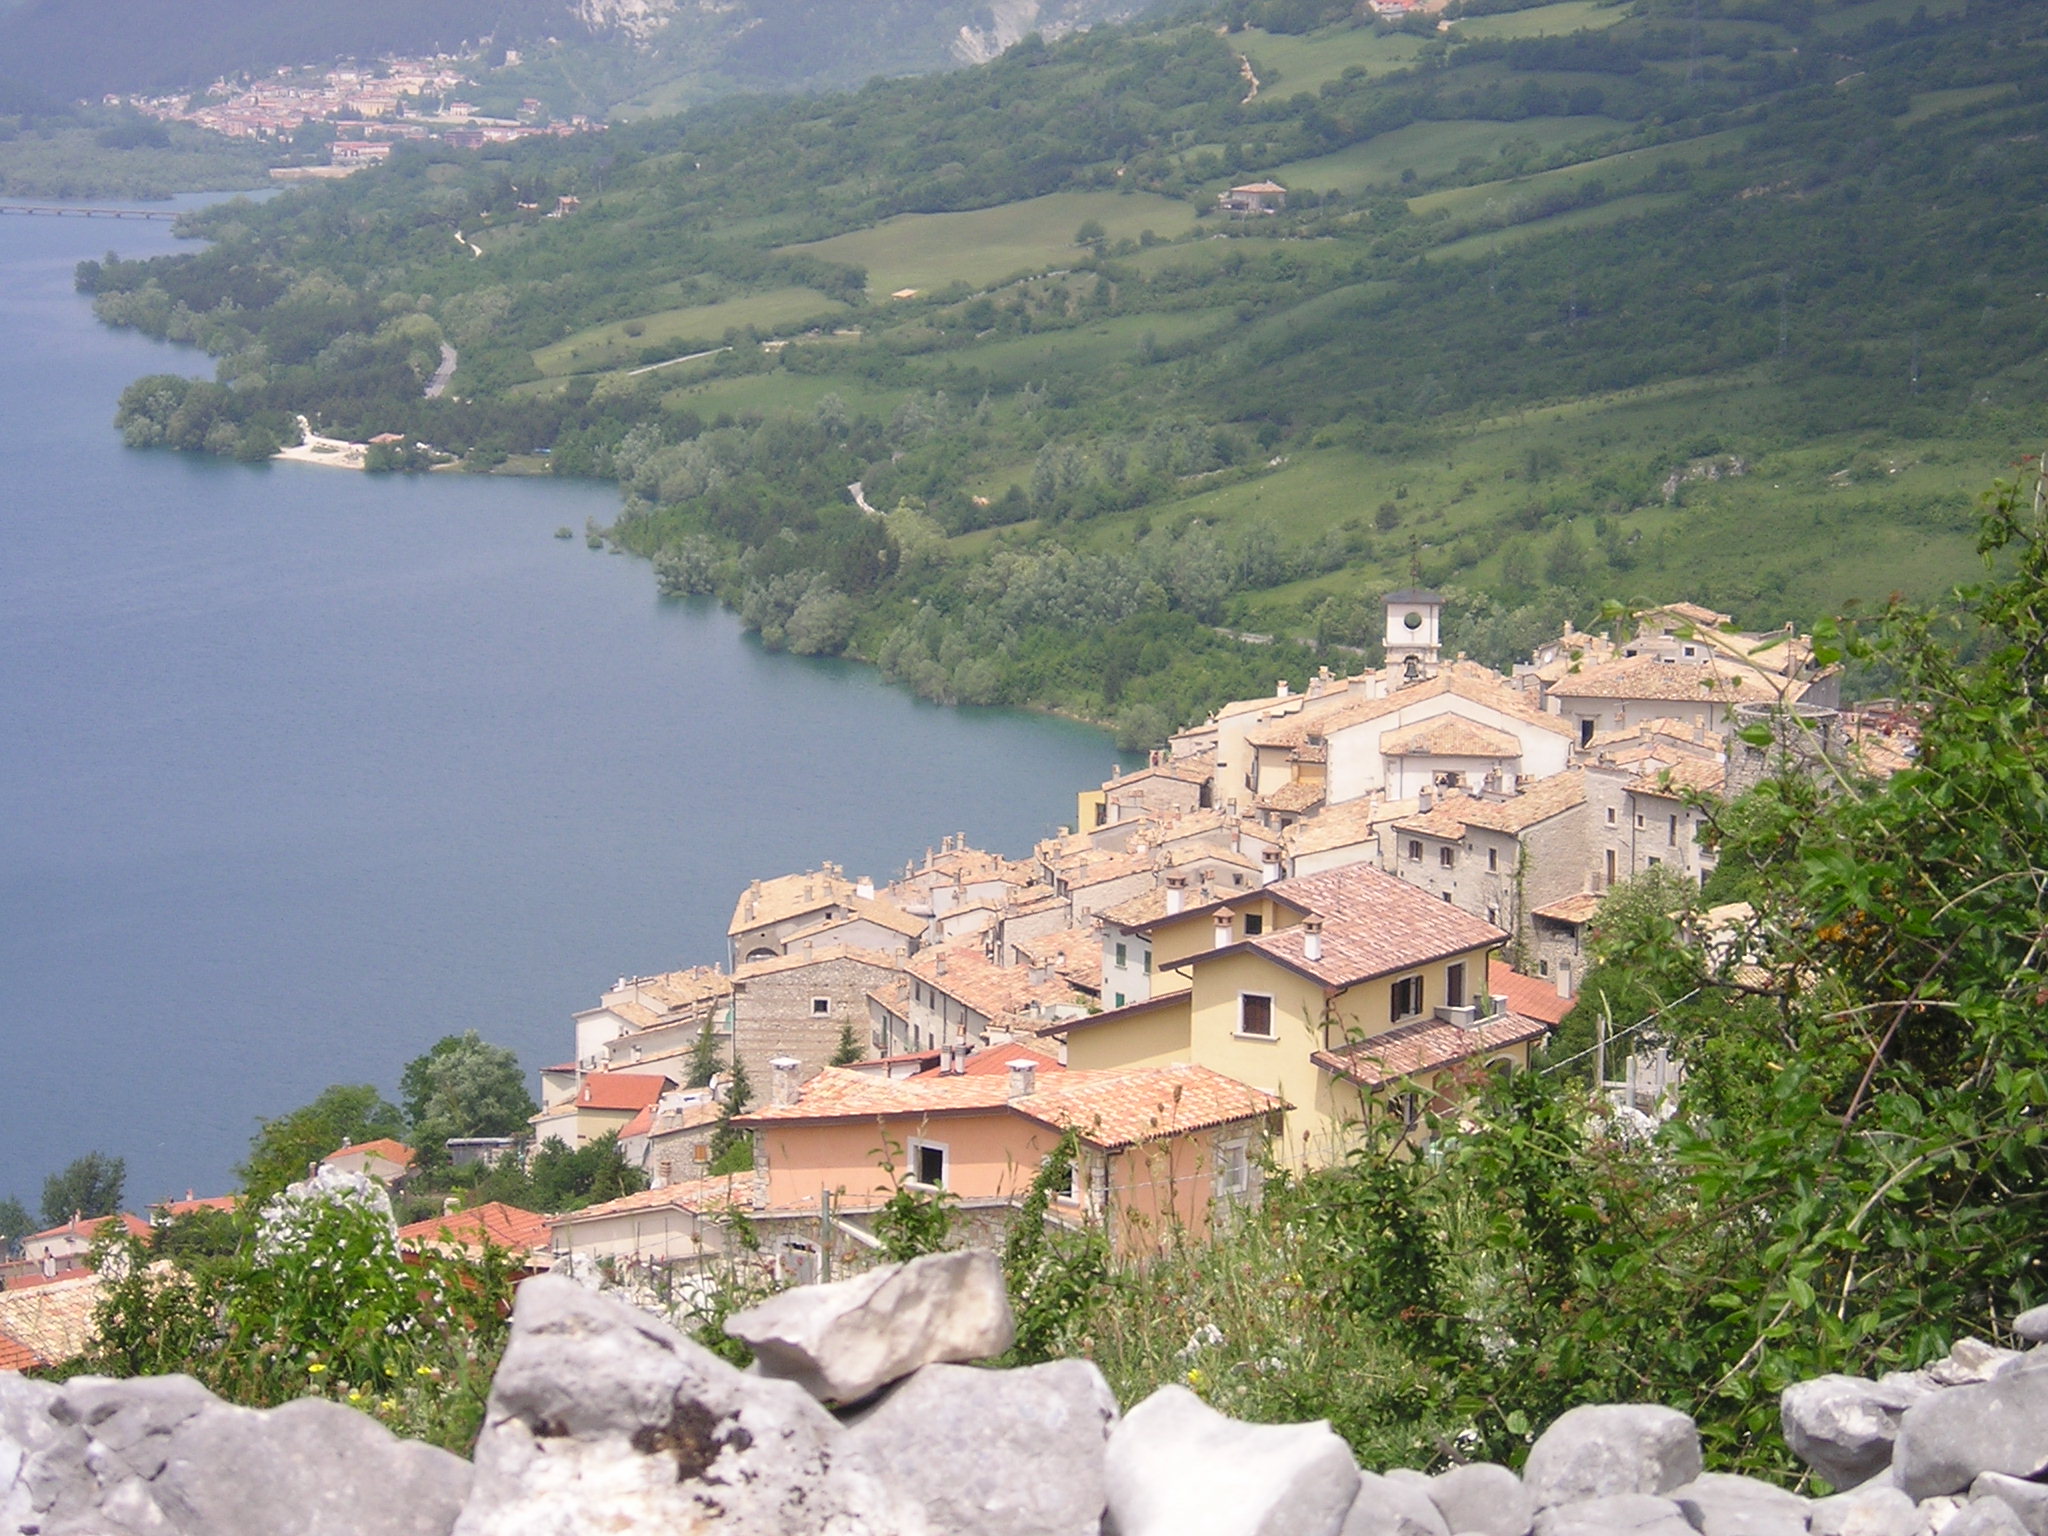 Alla scoperta del borgo di Barrea in Abruzzo